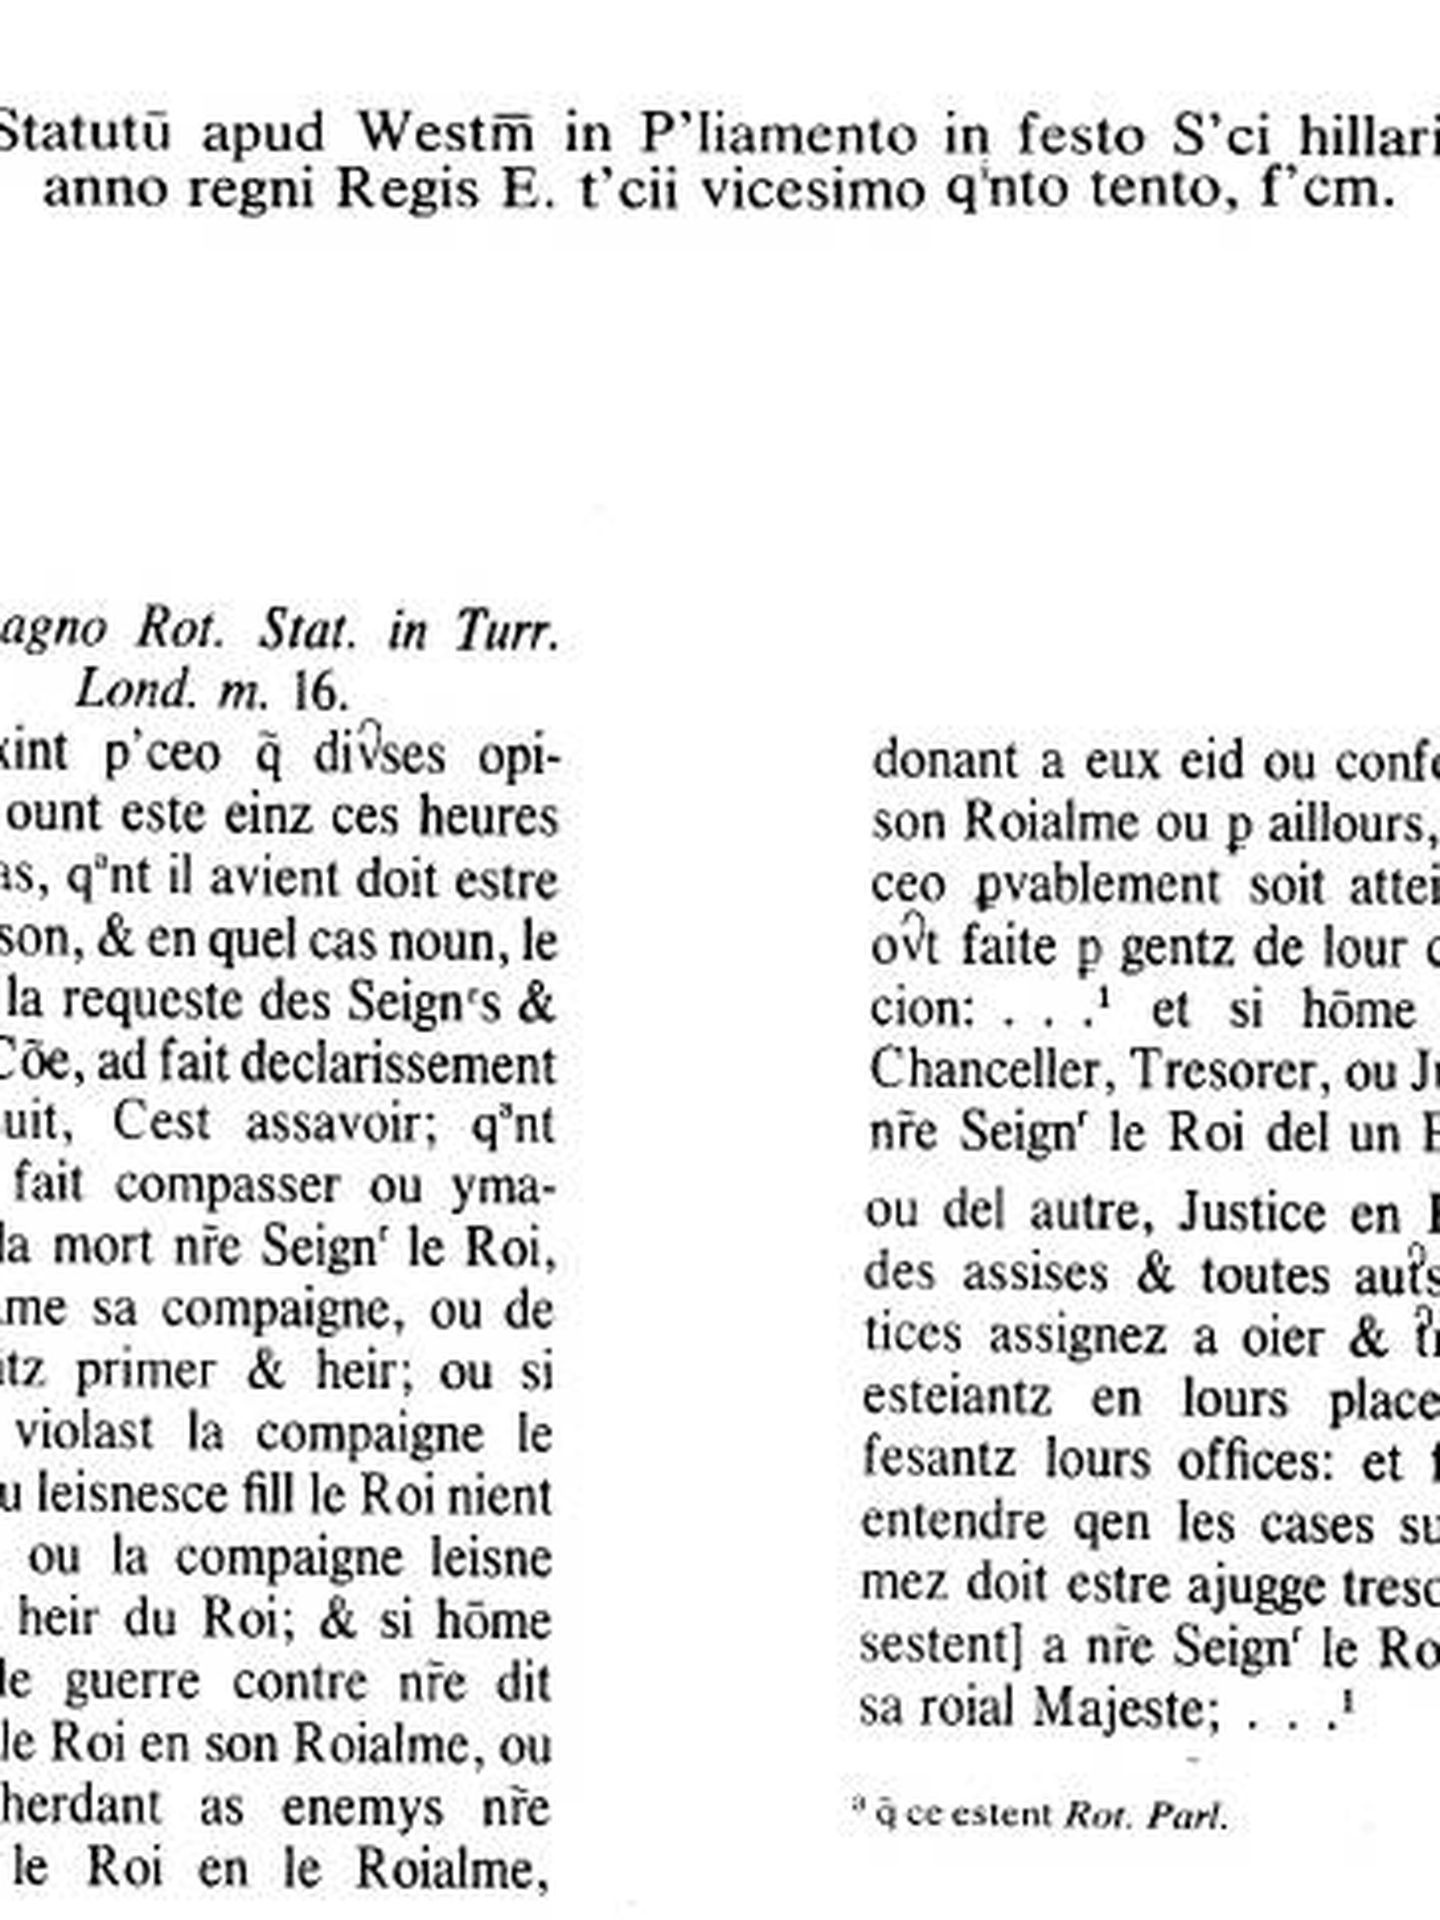 El estatuto original, en francés normando.